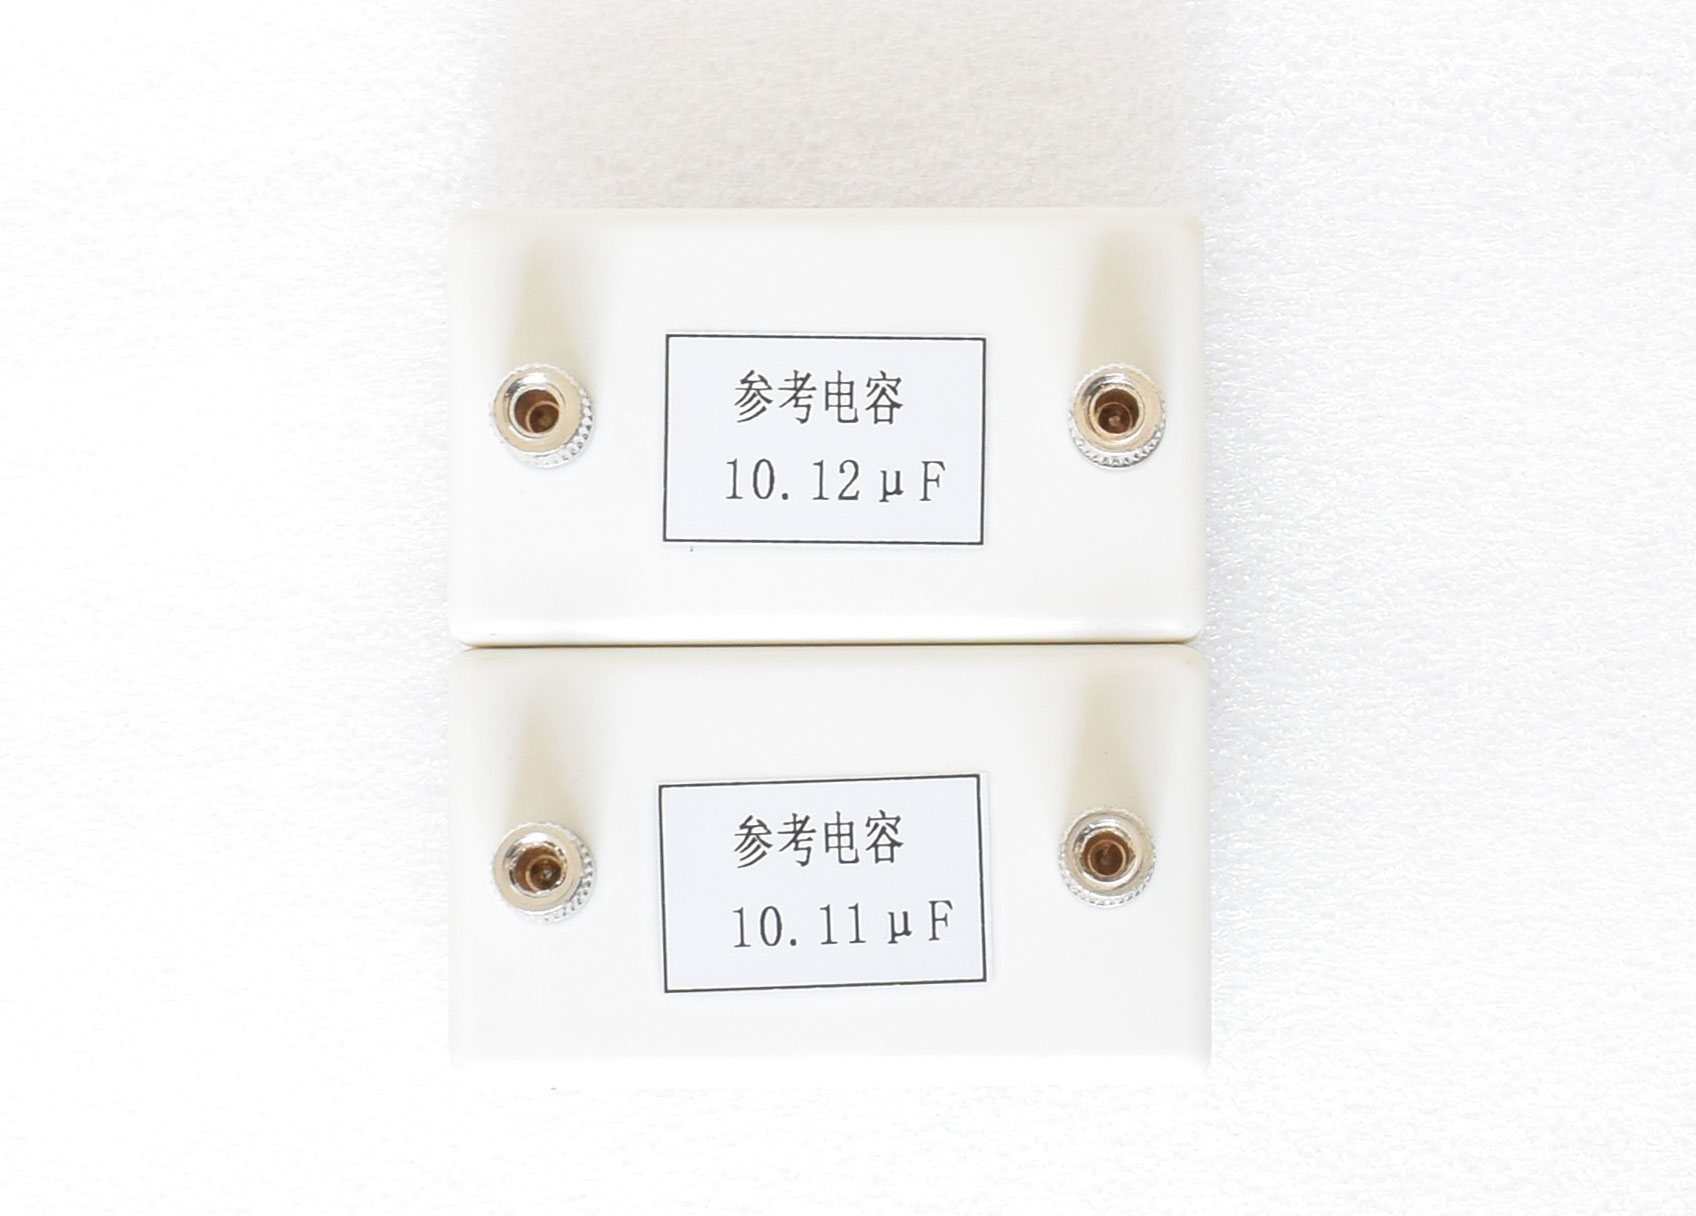 HK-2134停电电缆识别仪_电缆连接器相关-武汉鄂电电力试验设备有限公司